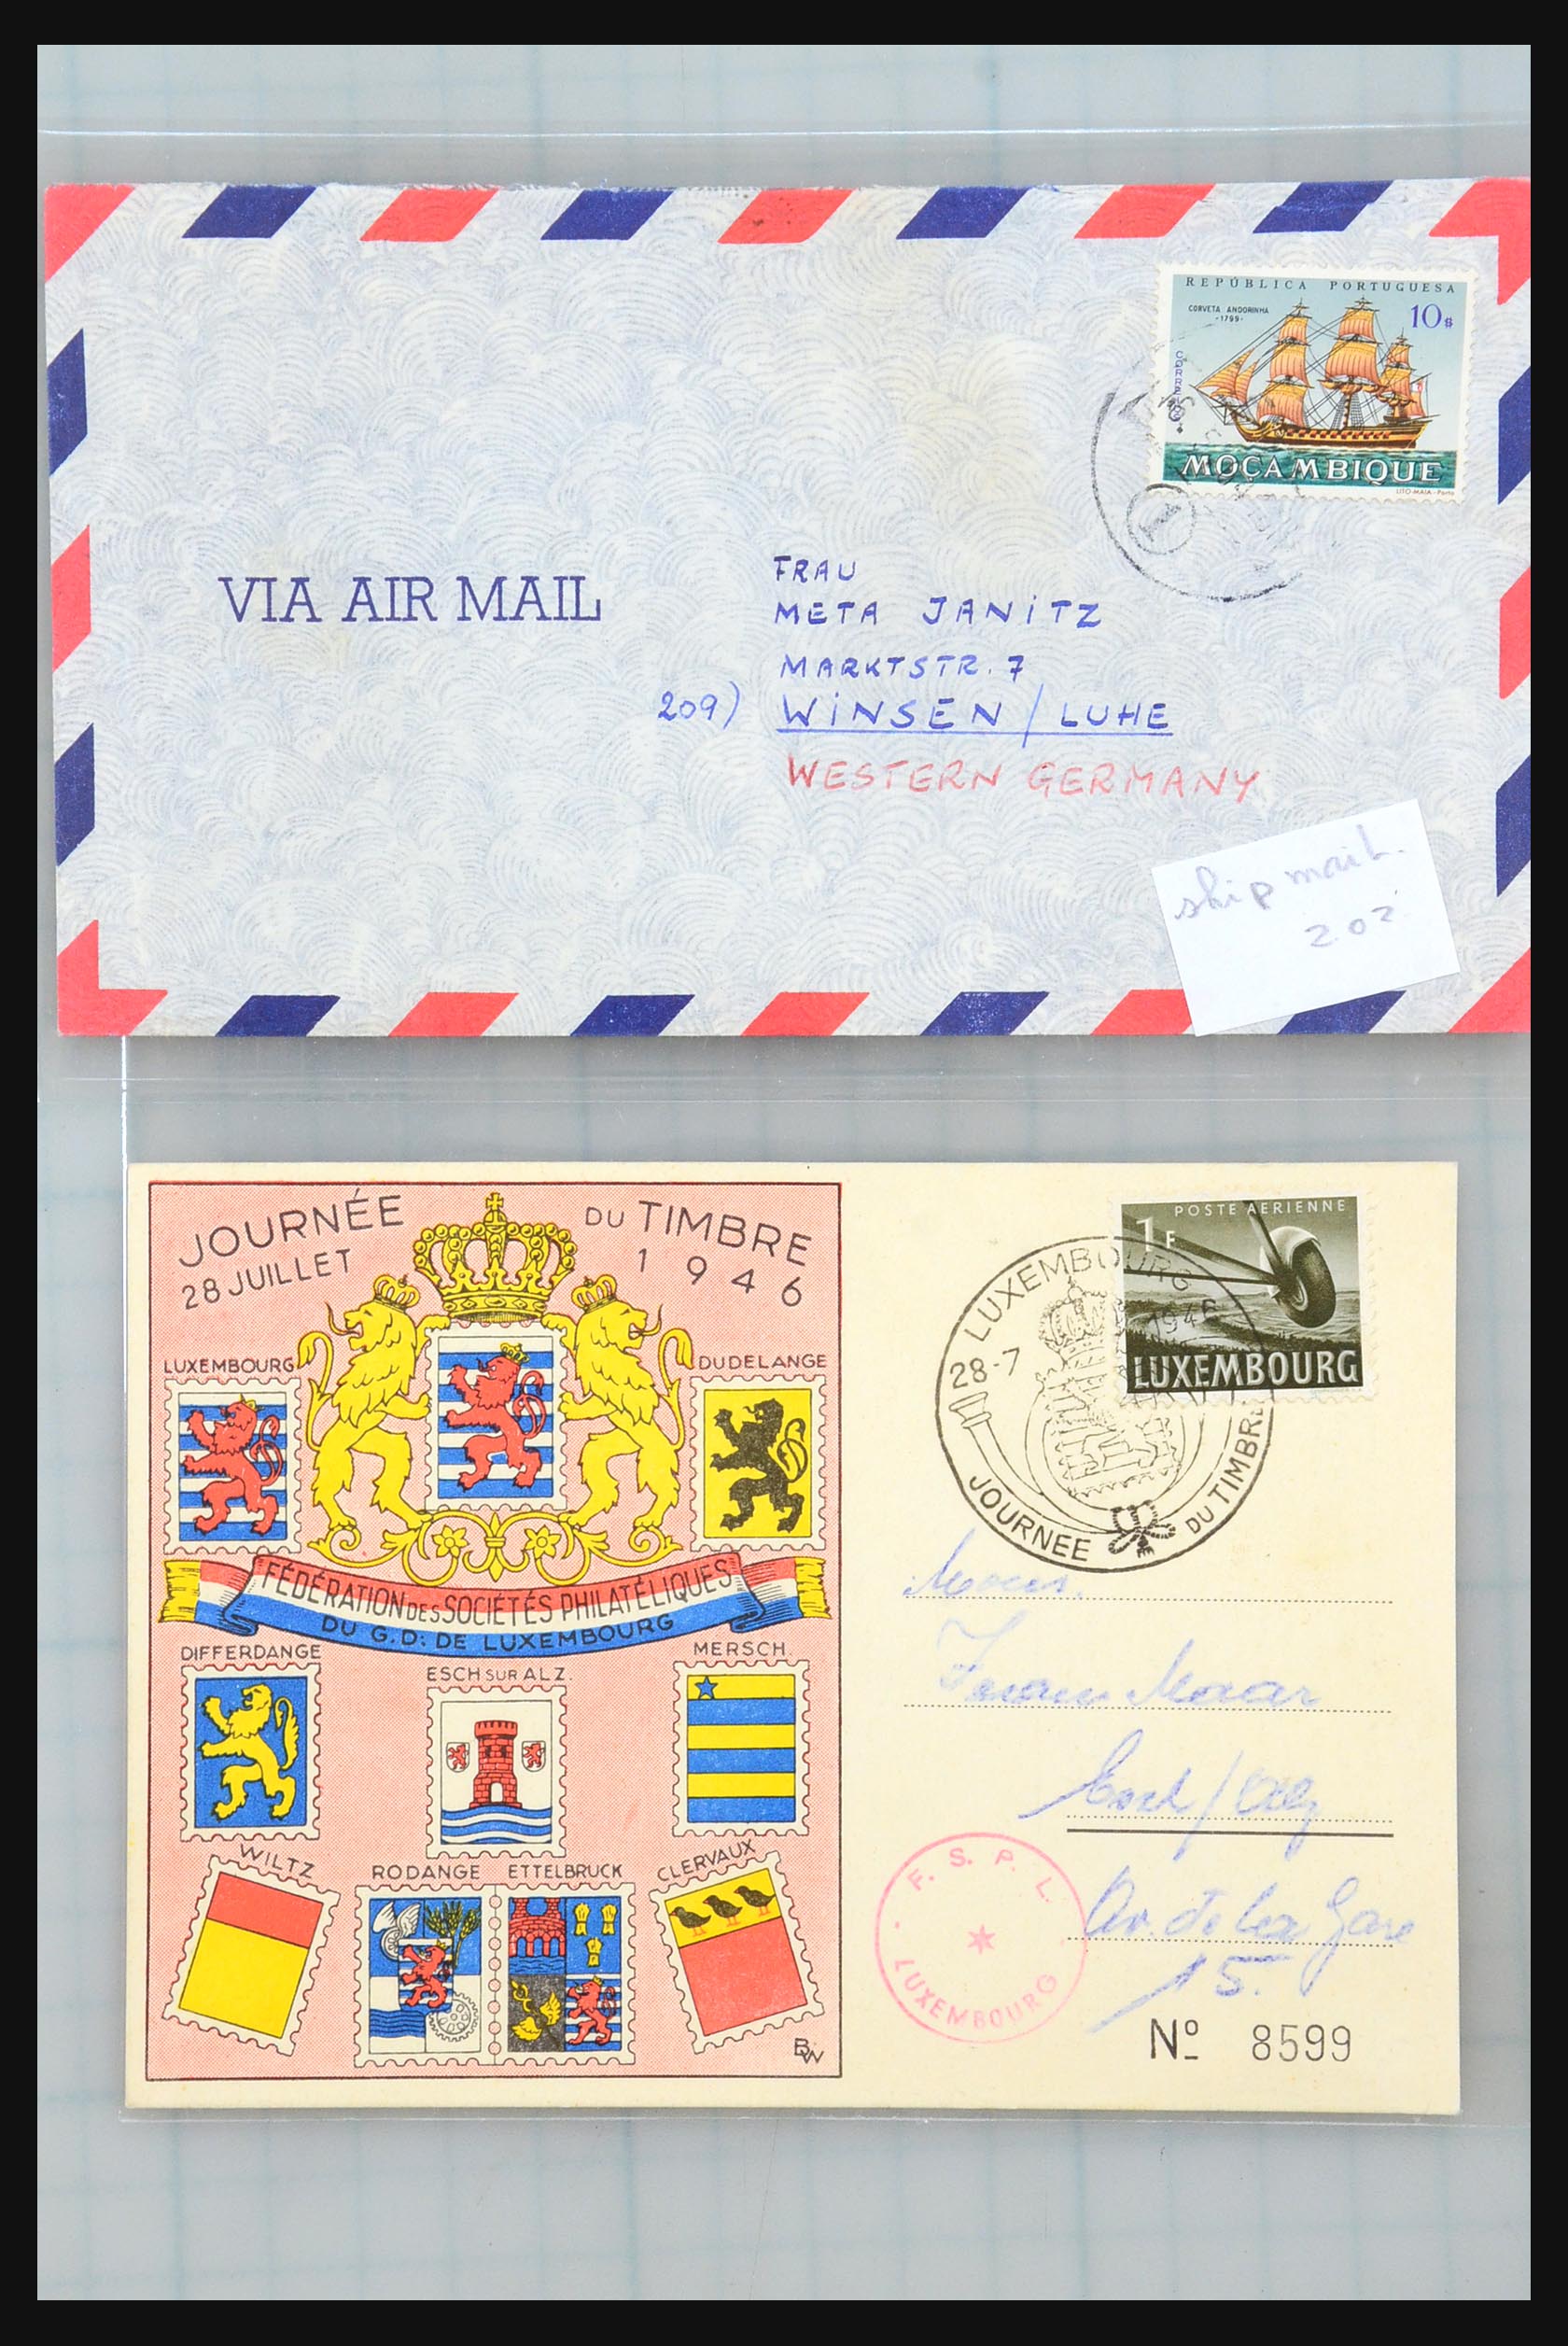 31358 191 - 31358 Portugal/Luxemburg/Griekenland brieven 1880-1960.